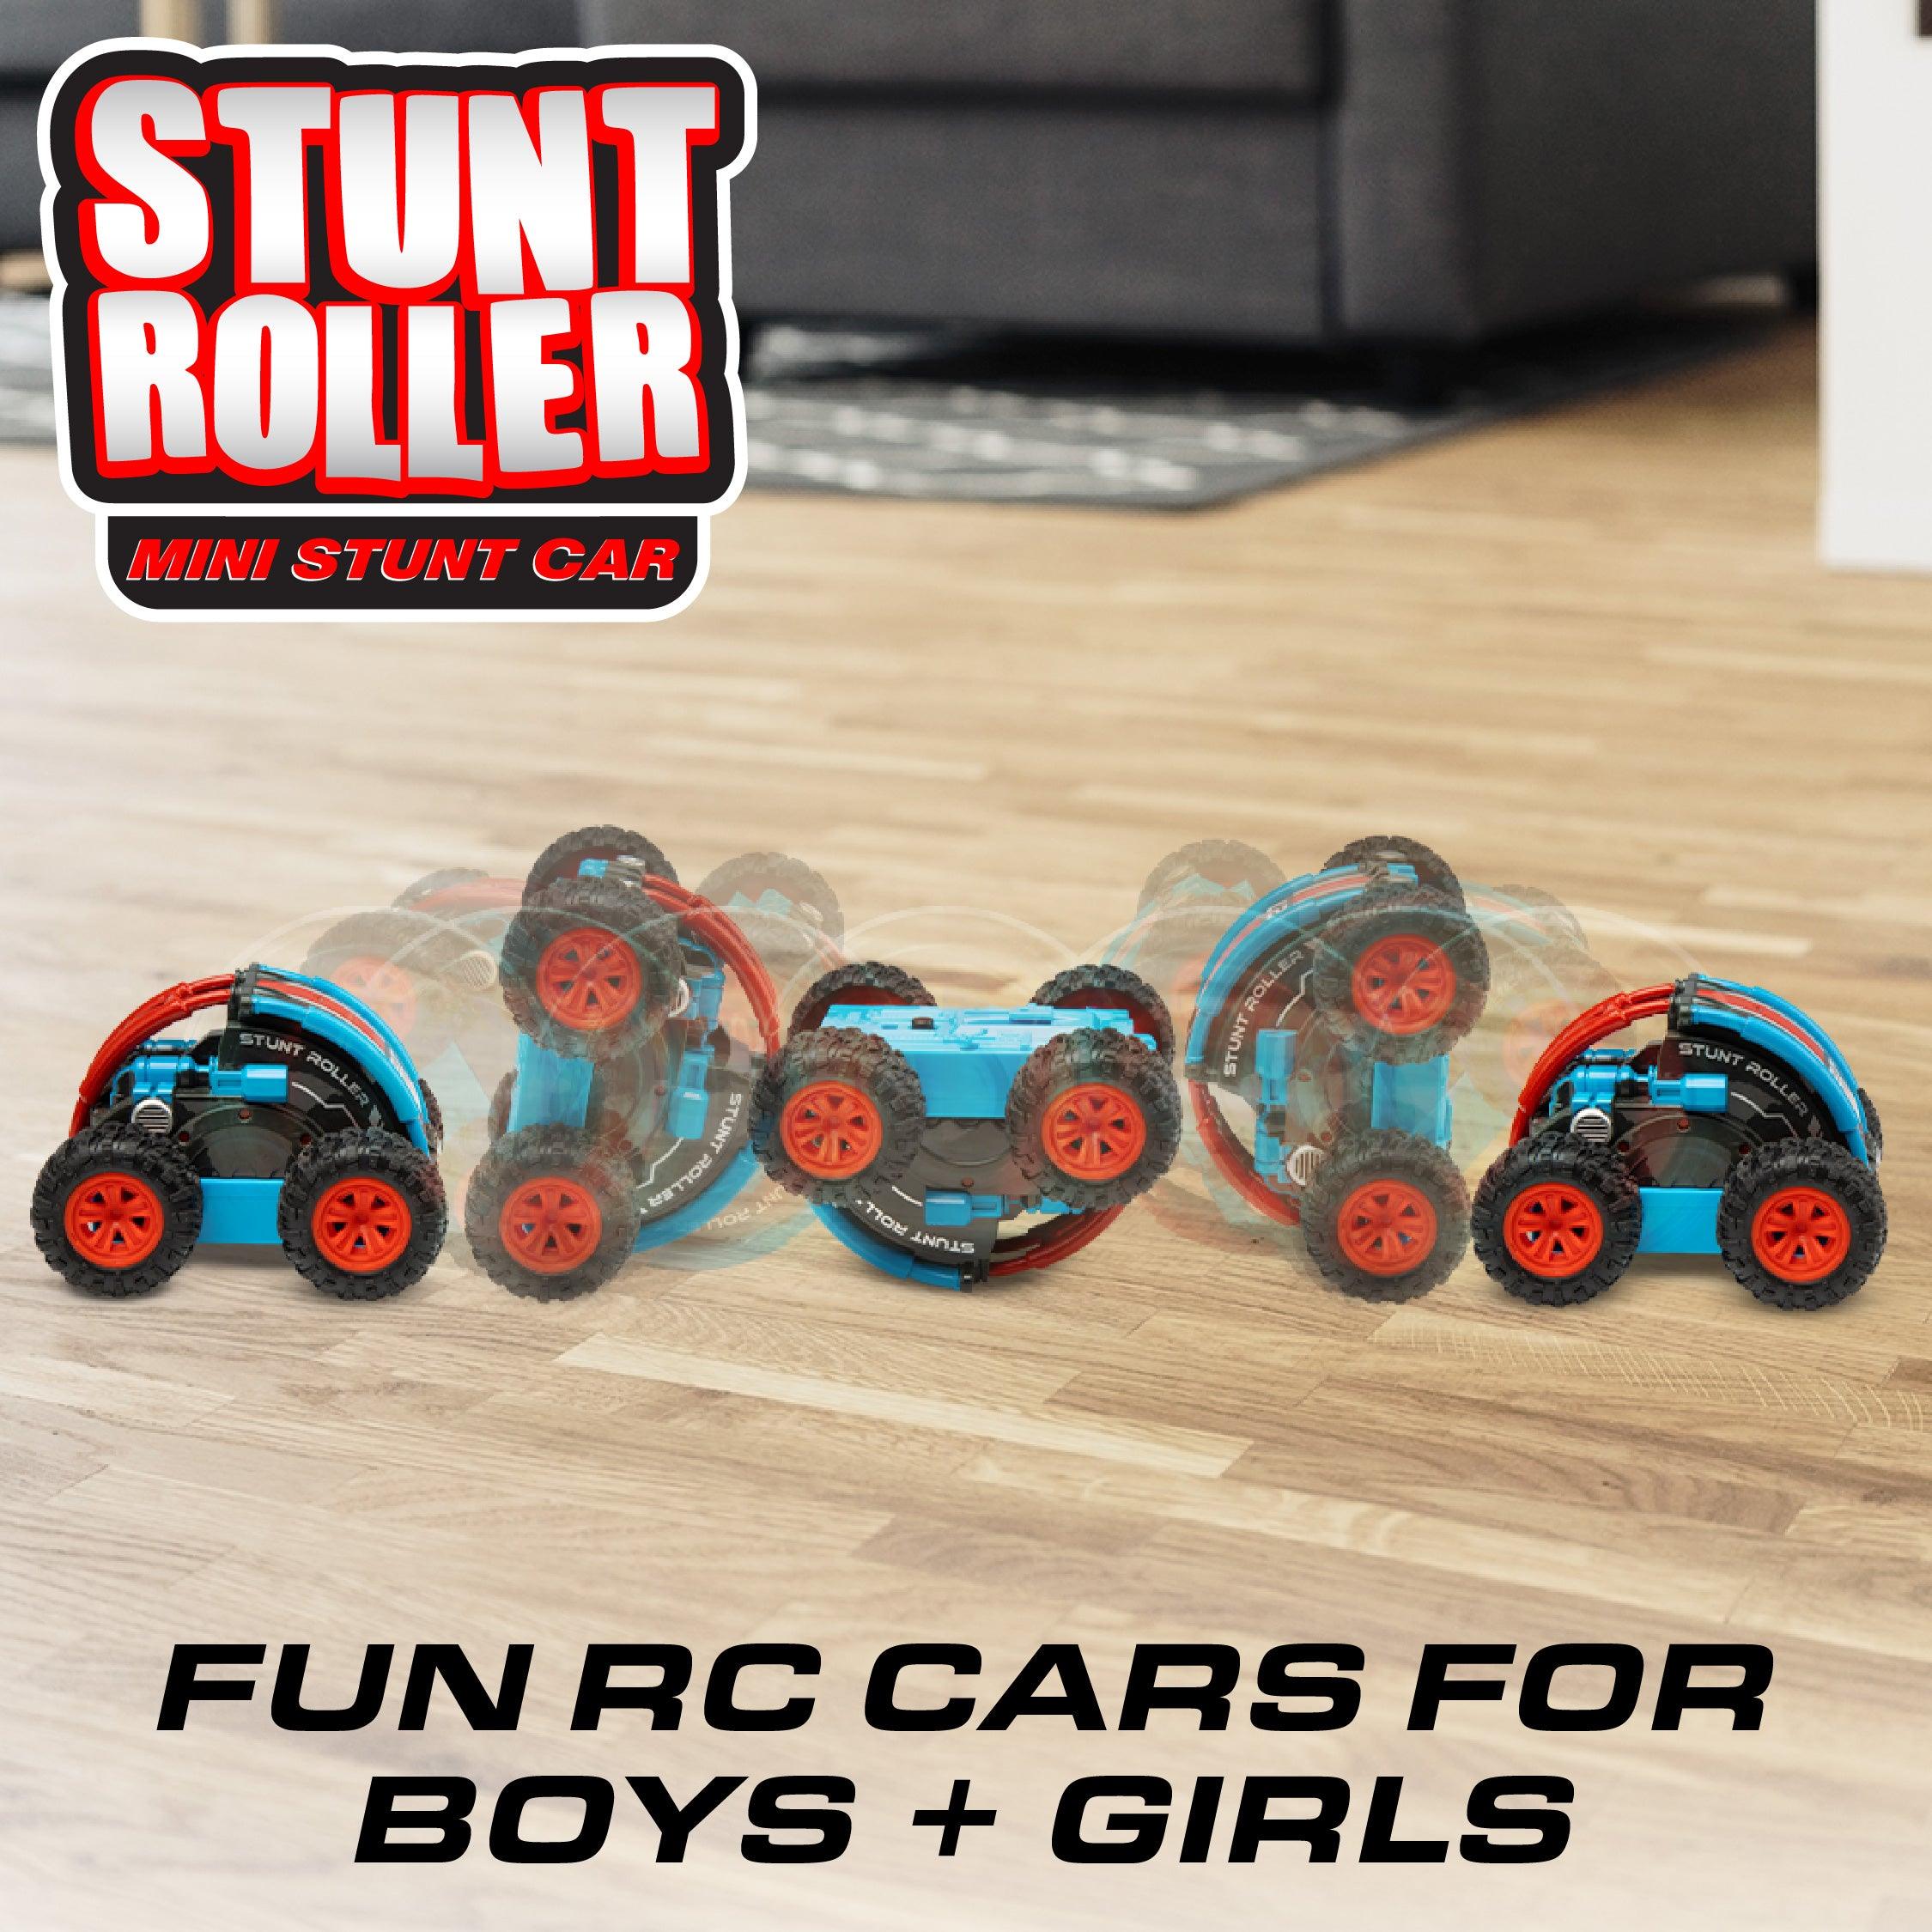 Power Your Fun Stunt Roller Mini Remote Control Car - poweryourfun